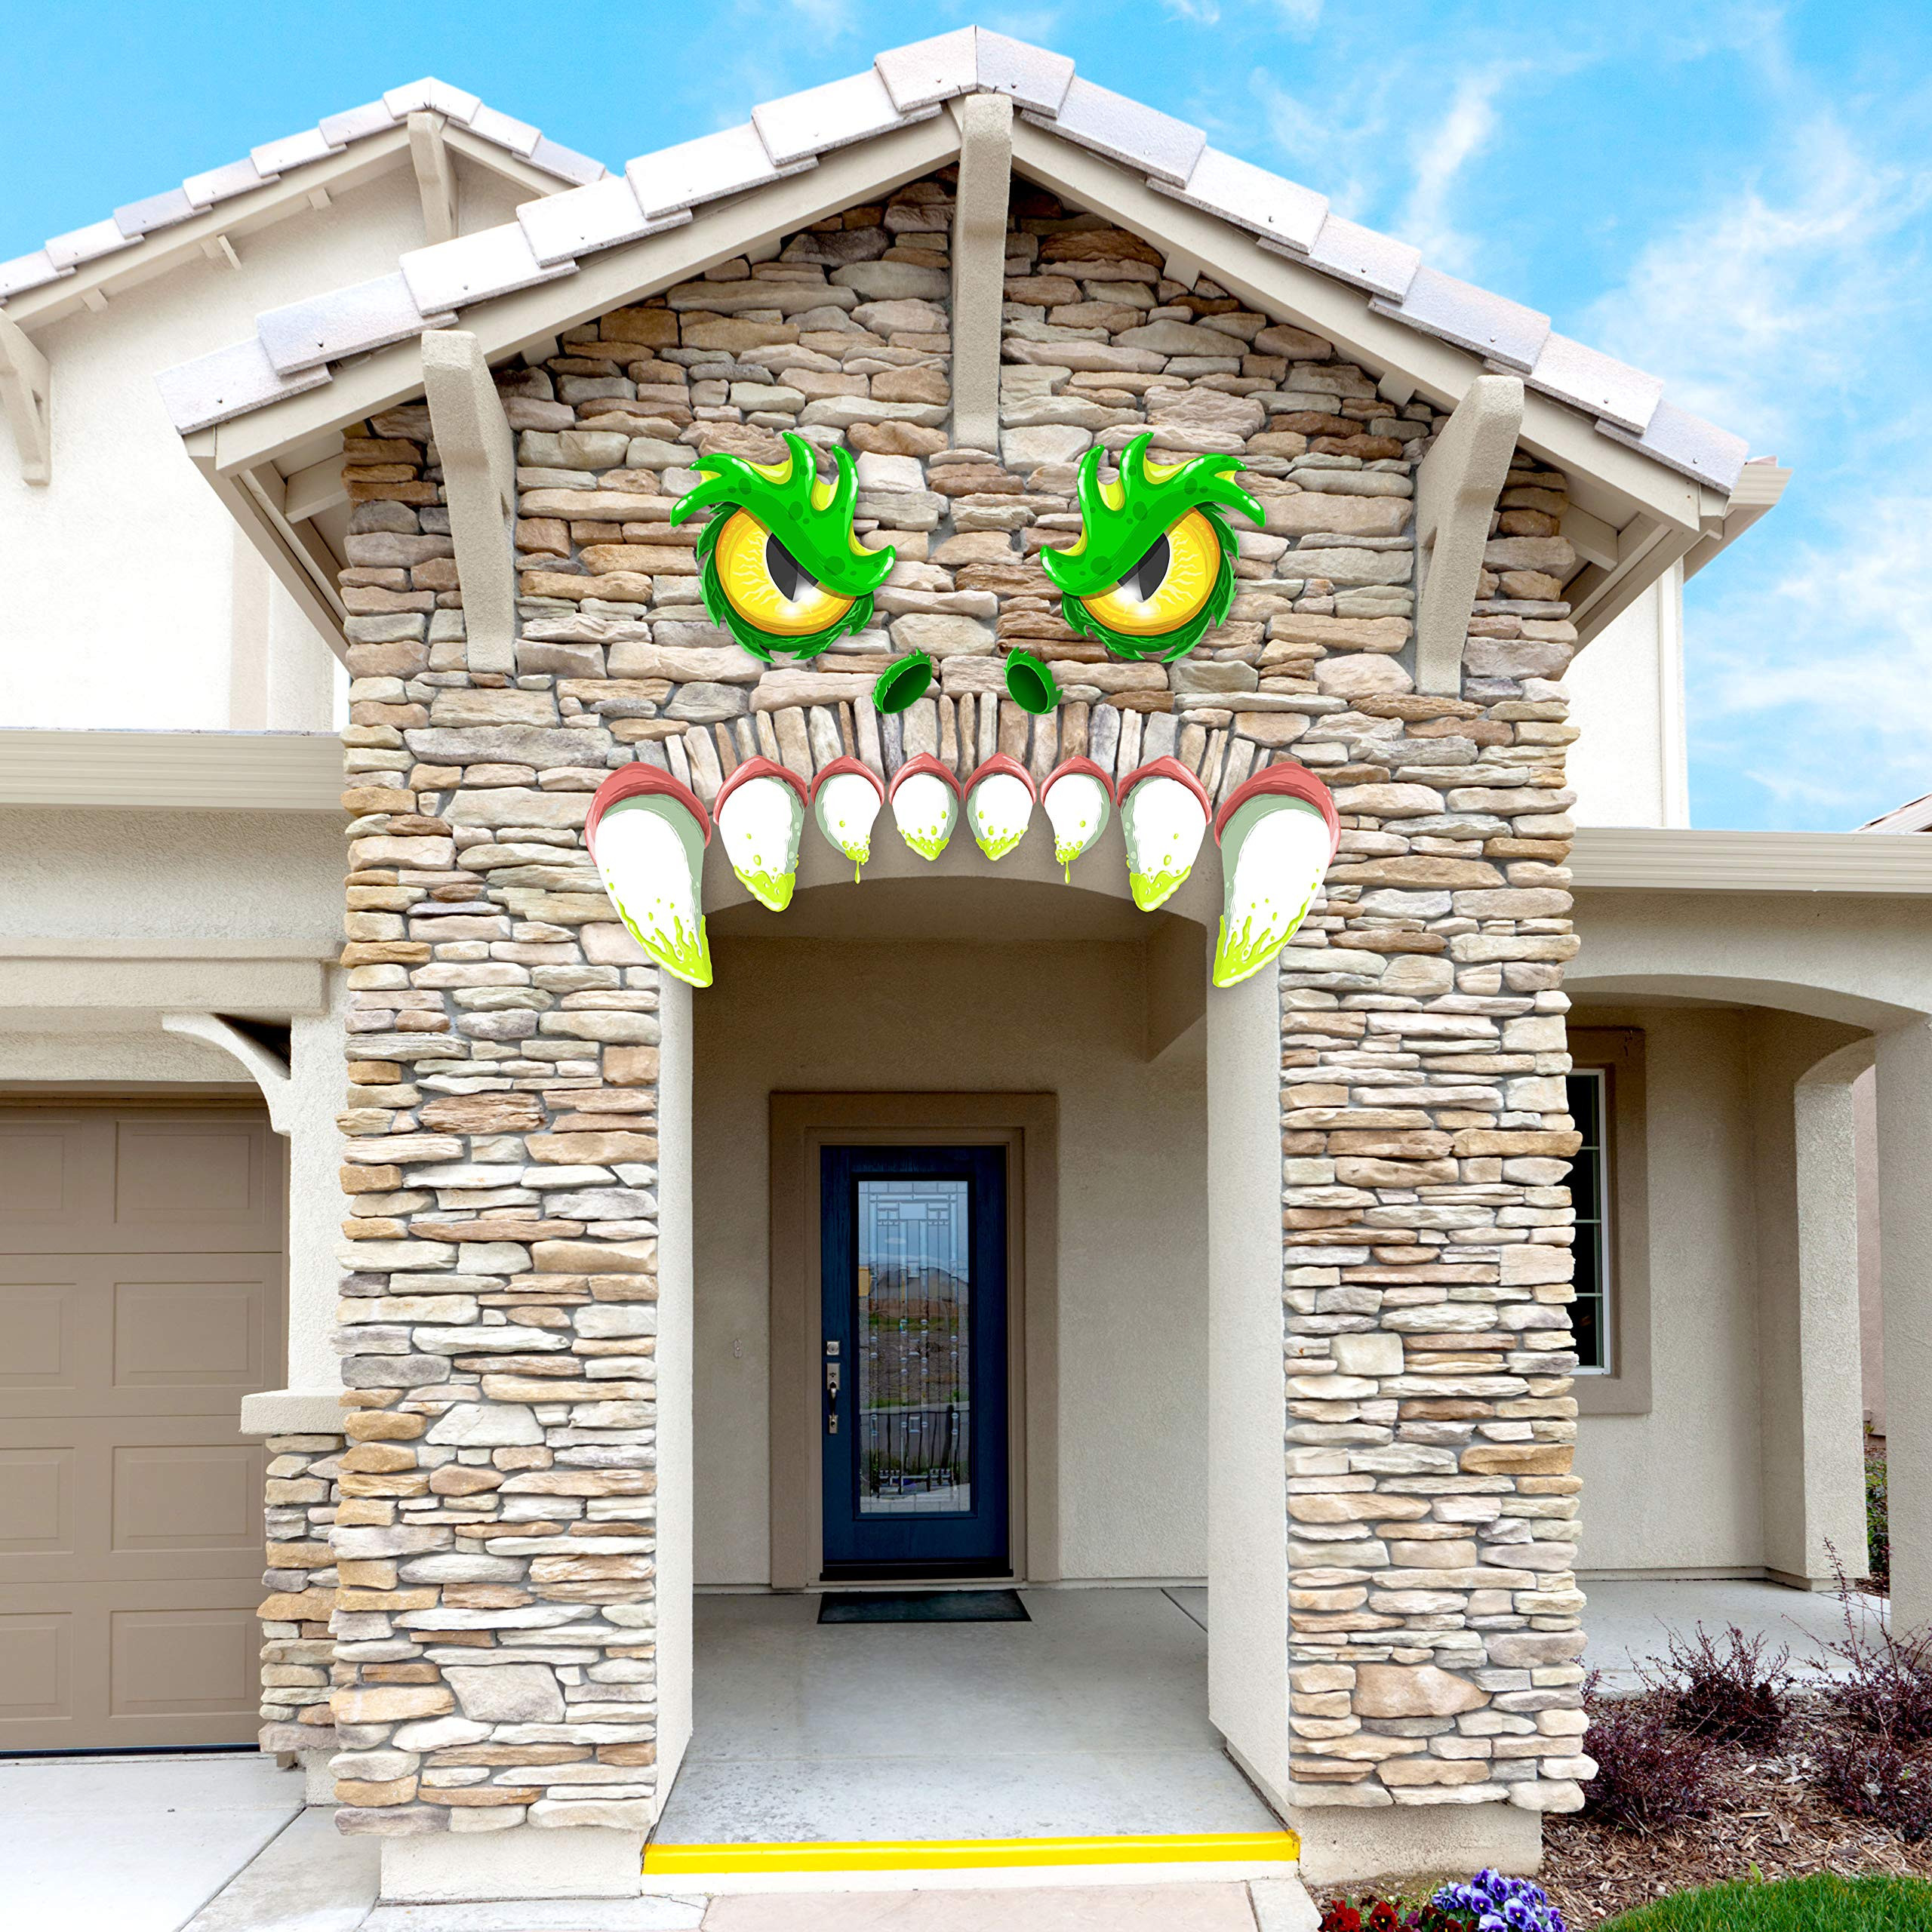 Halloween Garage Door Decals
 JOYIN Monster Face Halloween Archway Garage Door